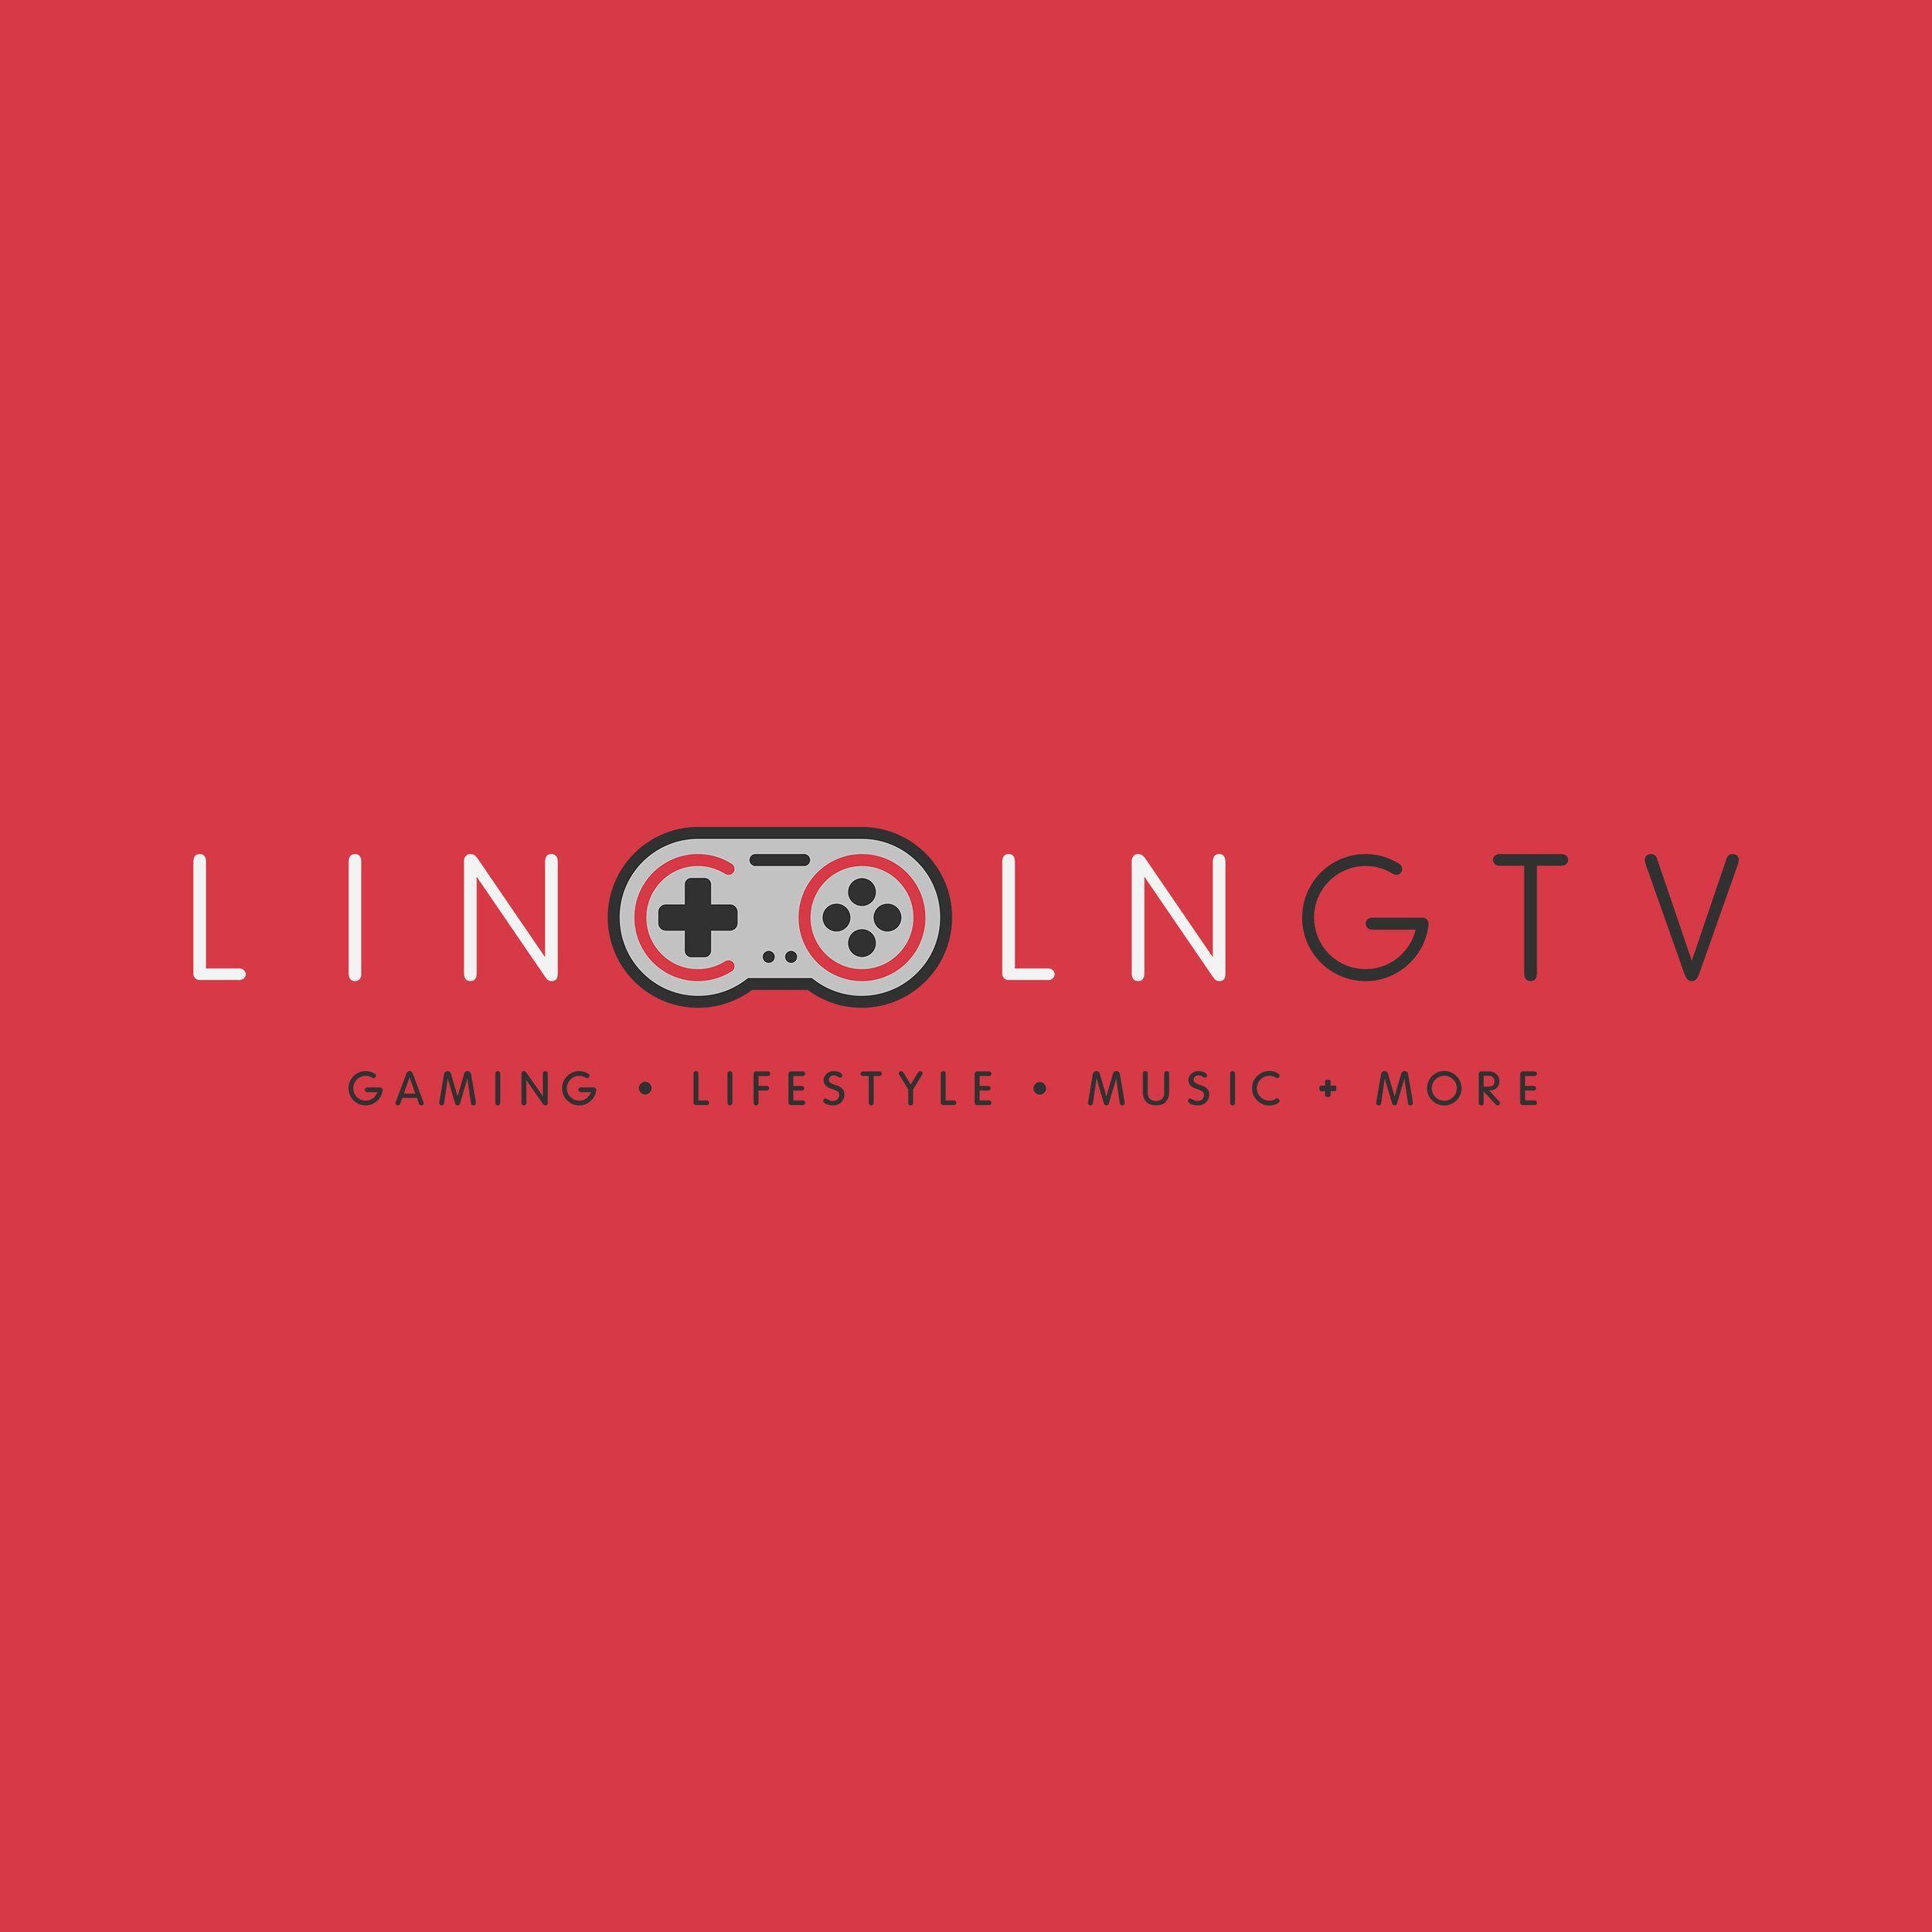 GTV Logo - A fun gaming logo design for Lincoln GTV. Follow